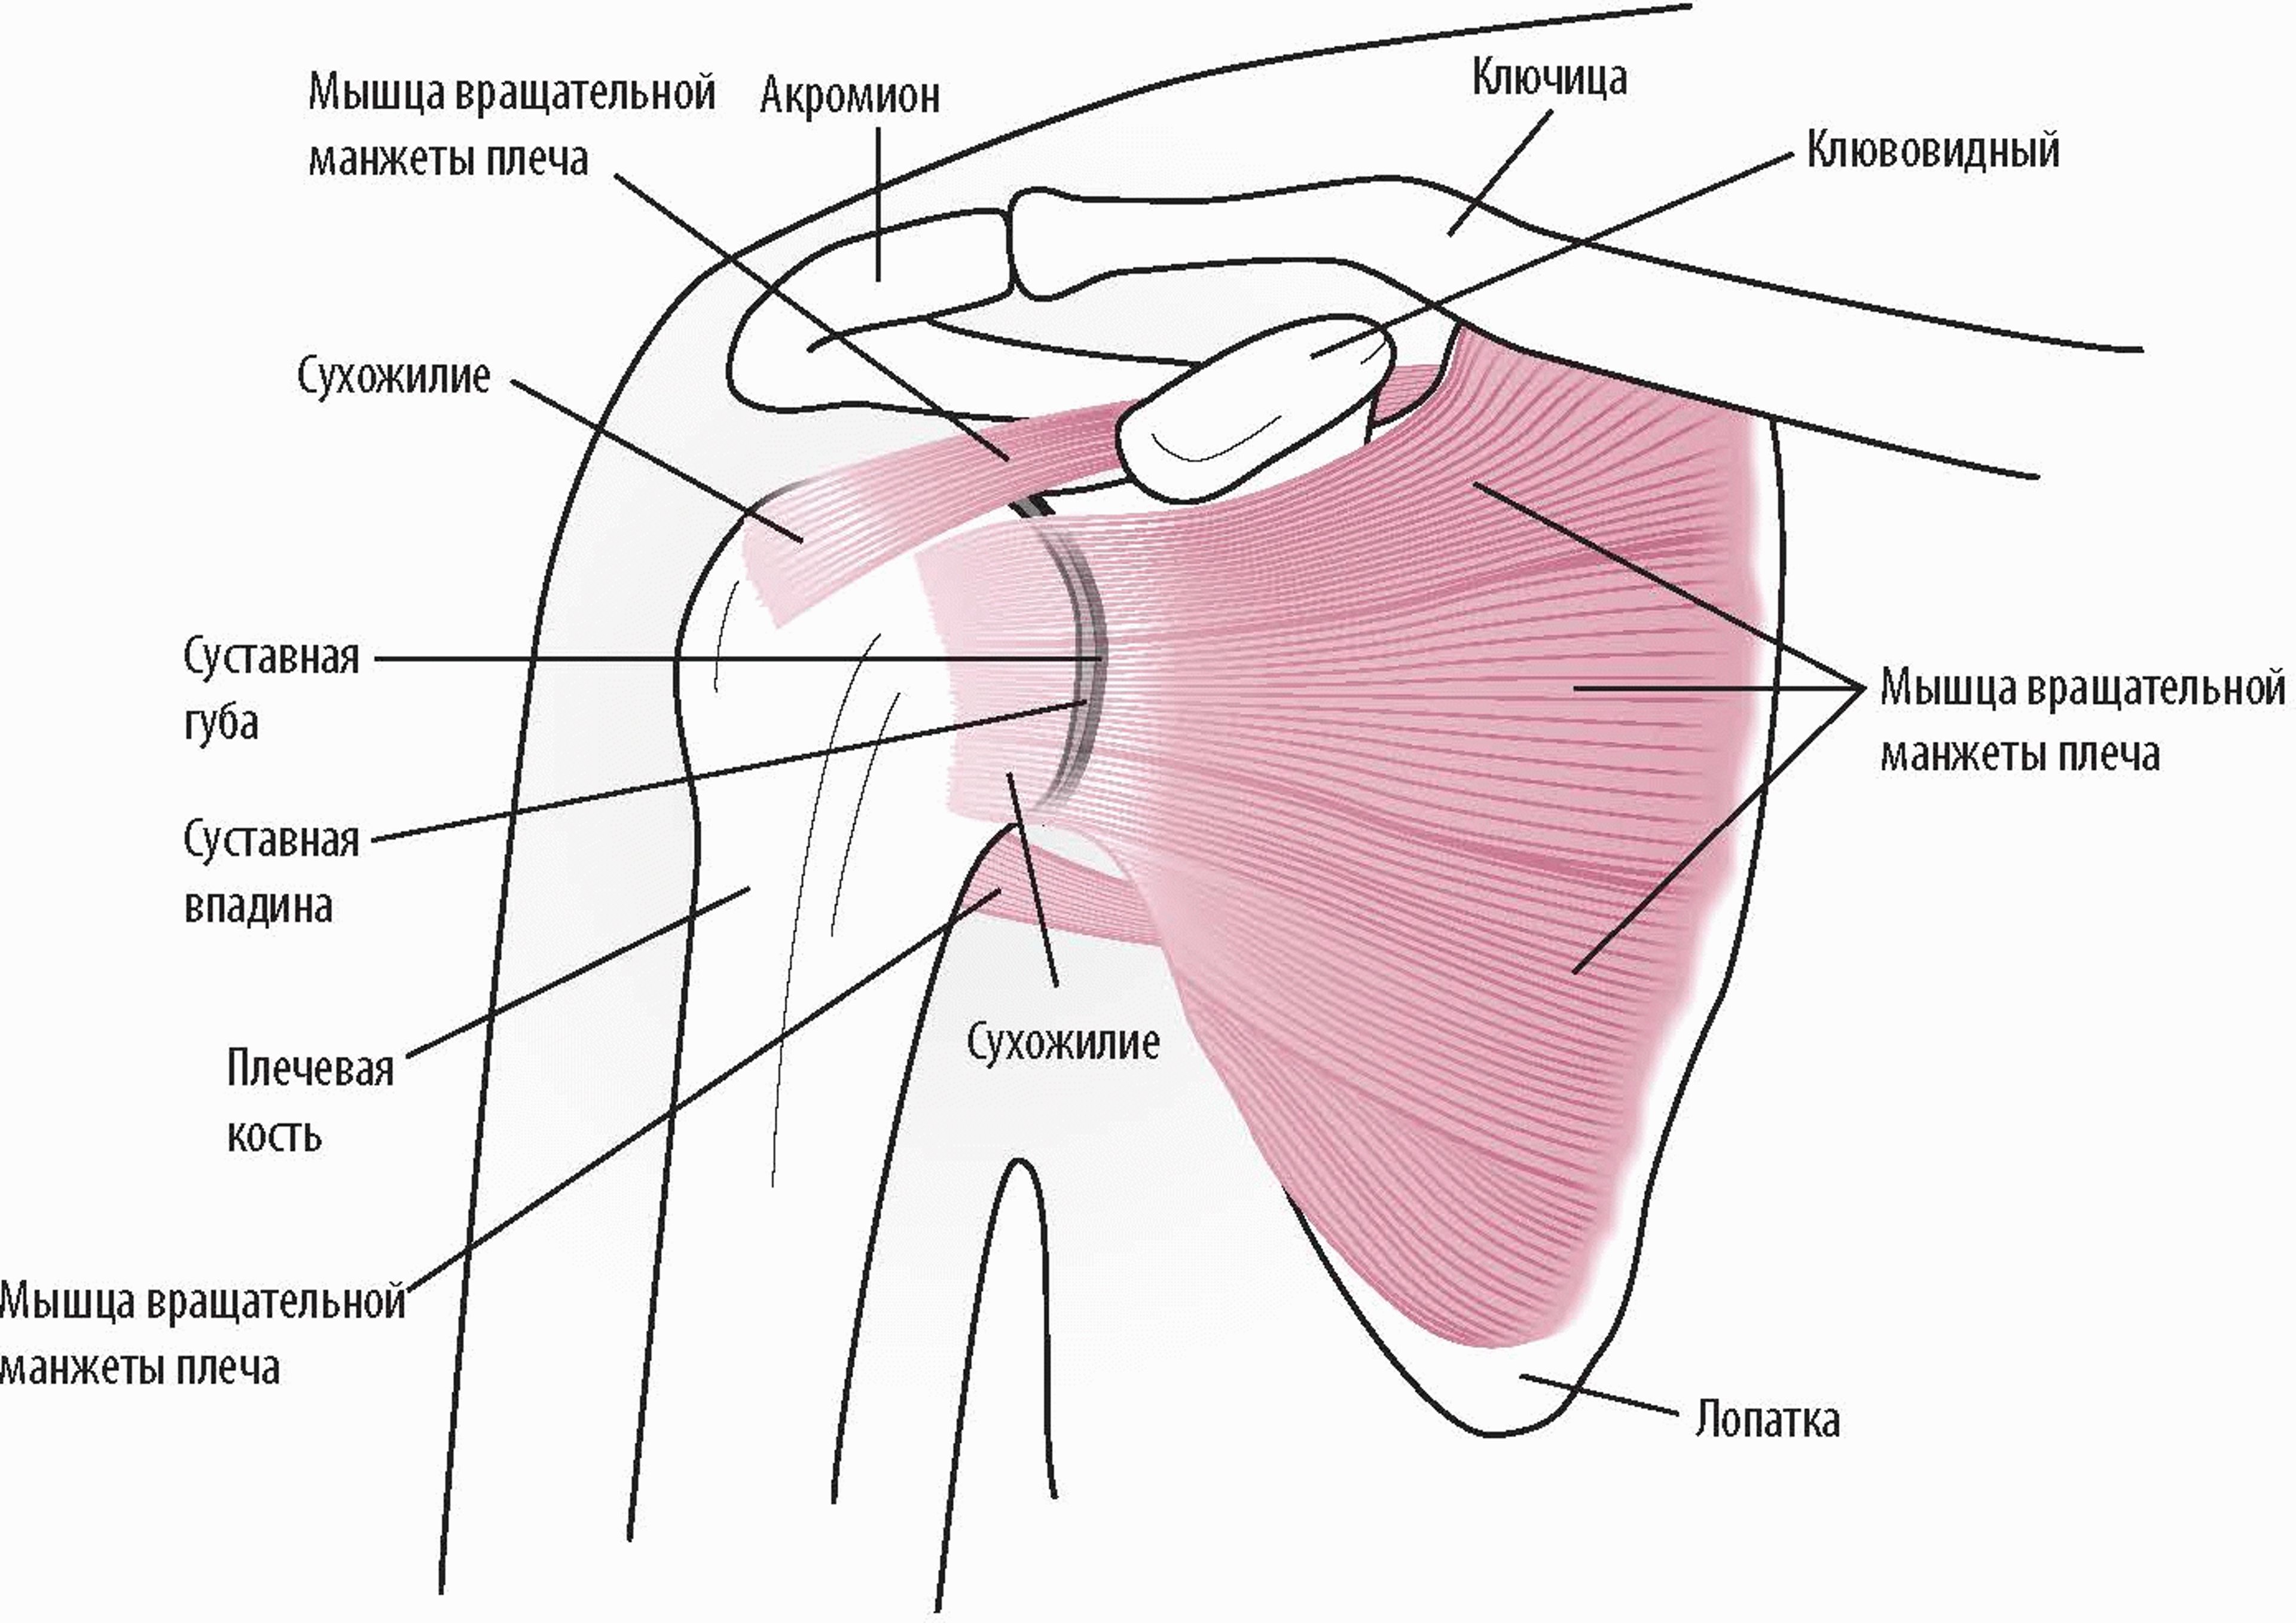 Анатомия плеча (вид спереди)